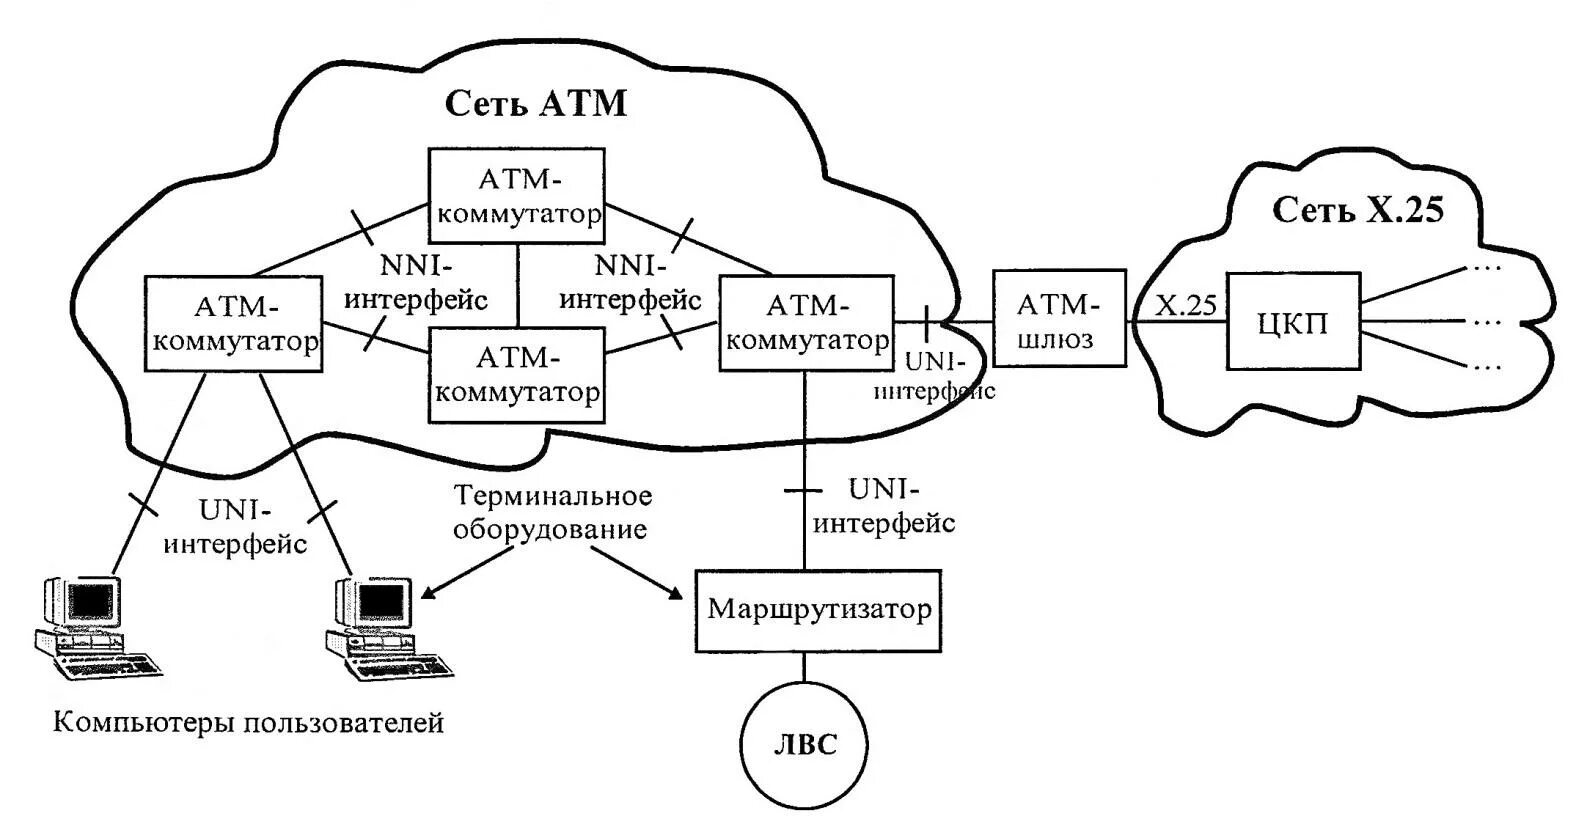 ATM технология передачи данных. Структура сети ATM. Стандарты технологии ATM. Схема мультиплексирования сети ATM. Передача данных по голосовым каналам